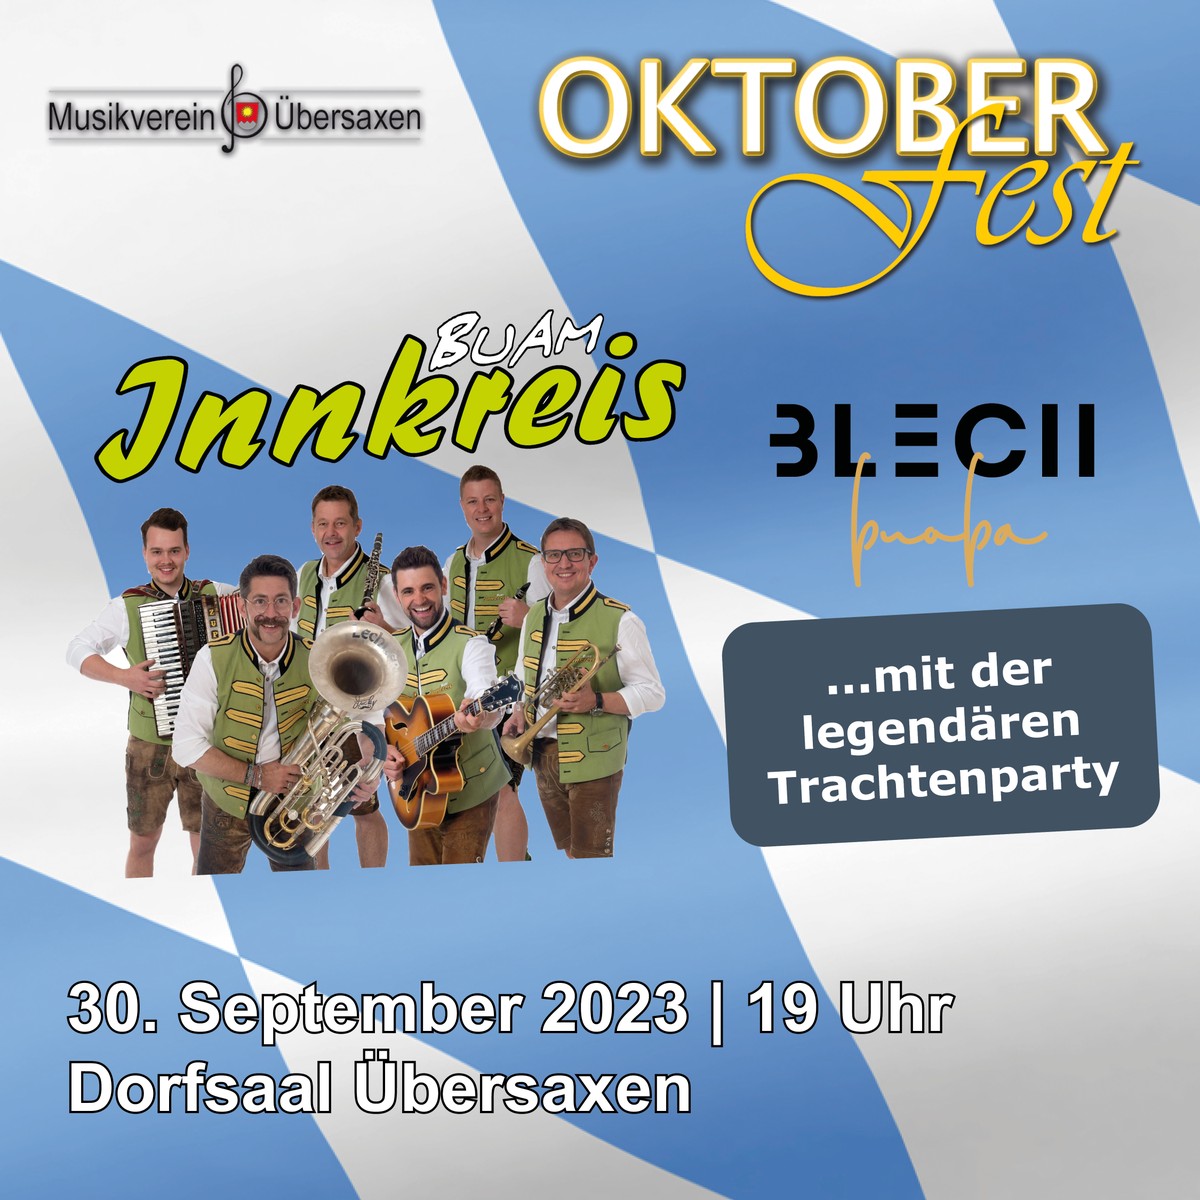 Musikverein Übersaxen Oktoberfest am 30.September 2023